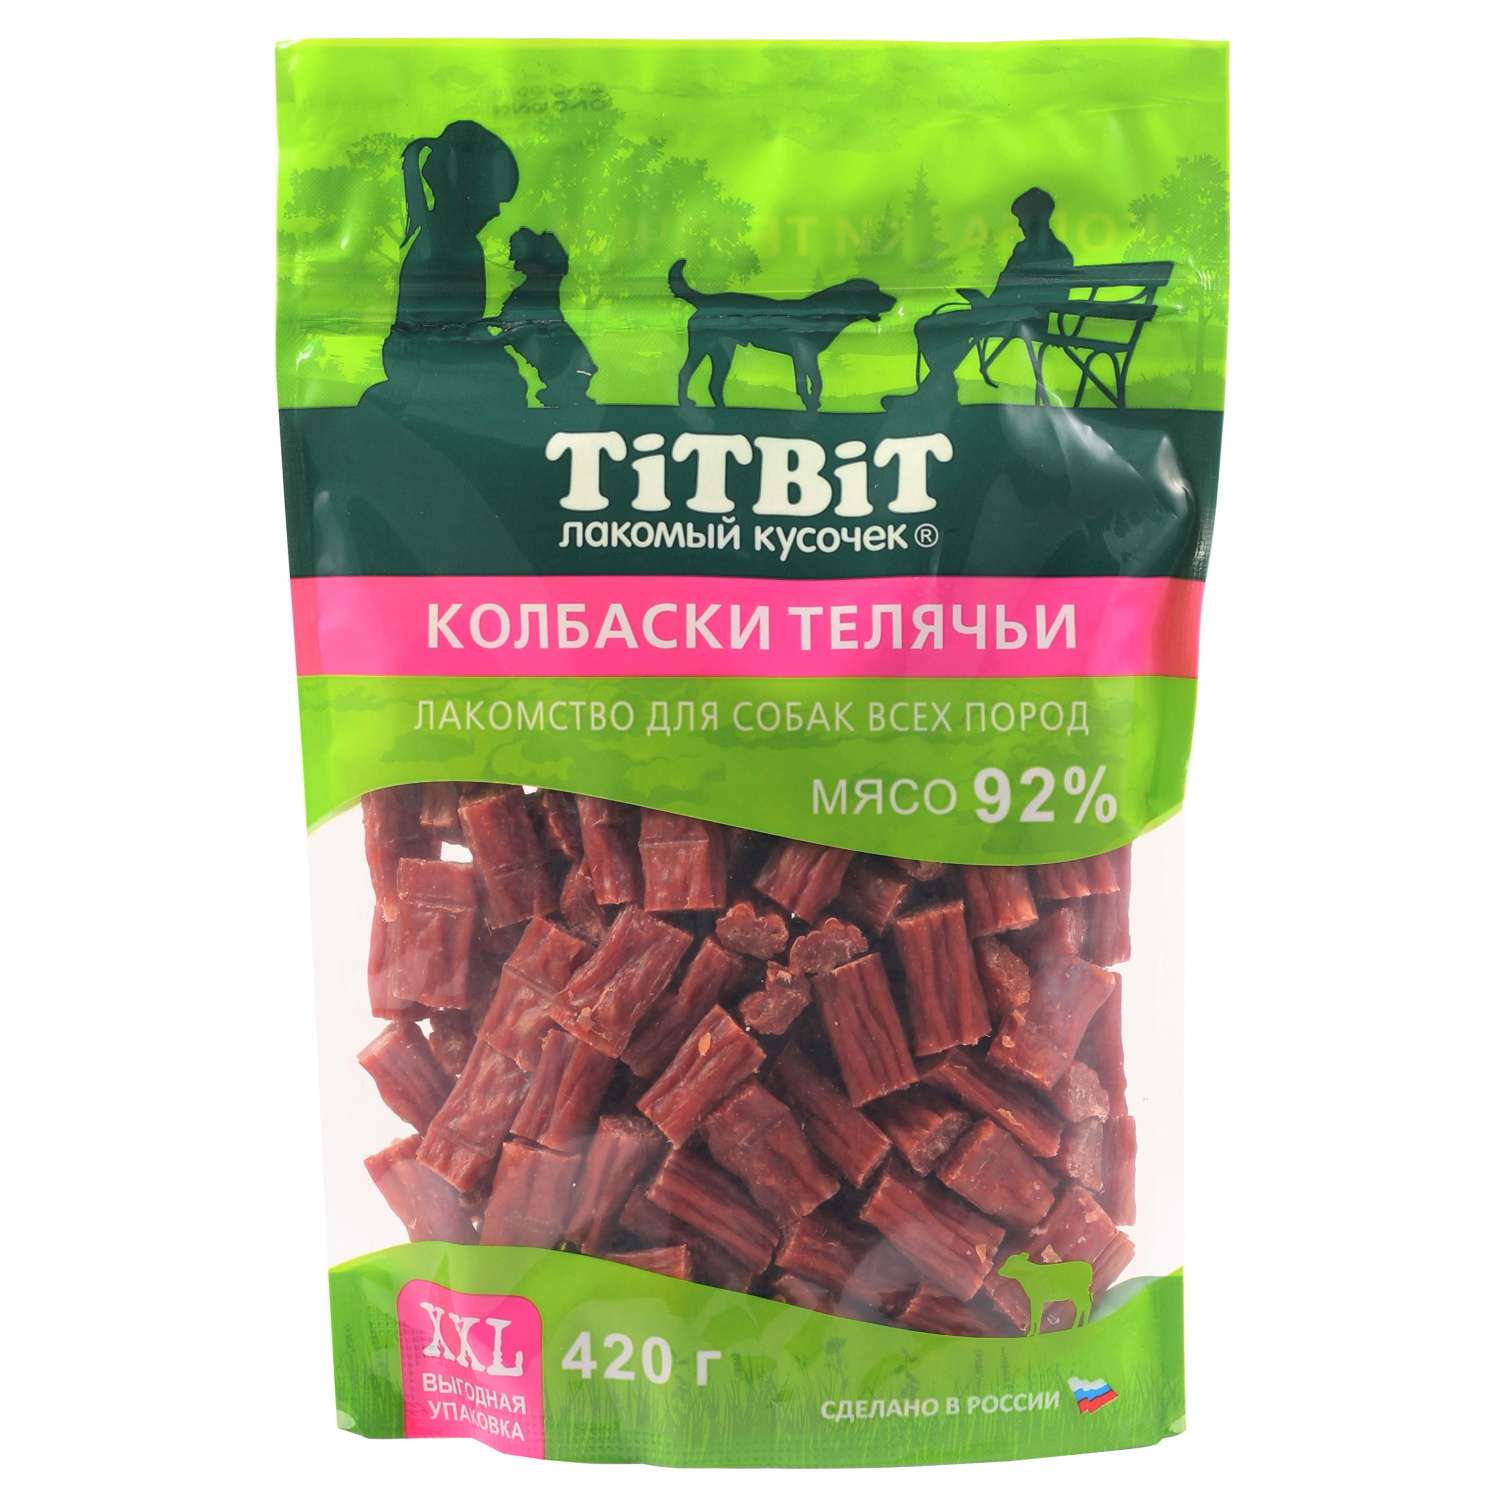 Лакомство для собак TITBIT 420г Колбаски телячьи для собак всех пород XXL выгодная упаковка - фото 1